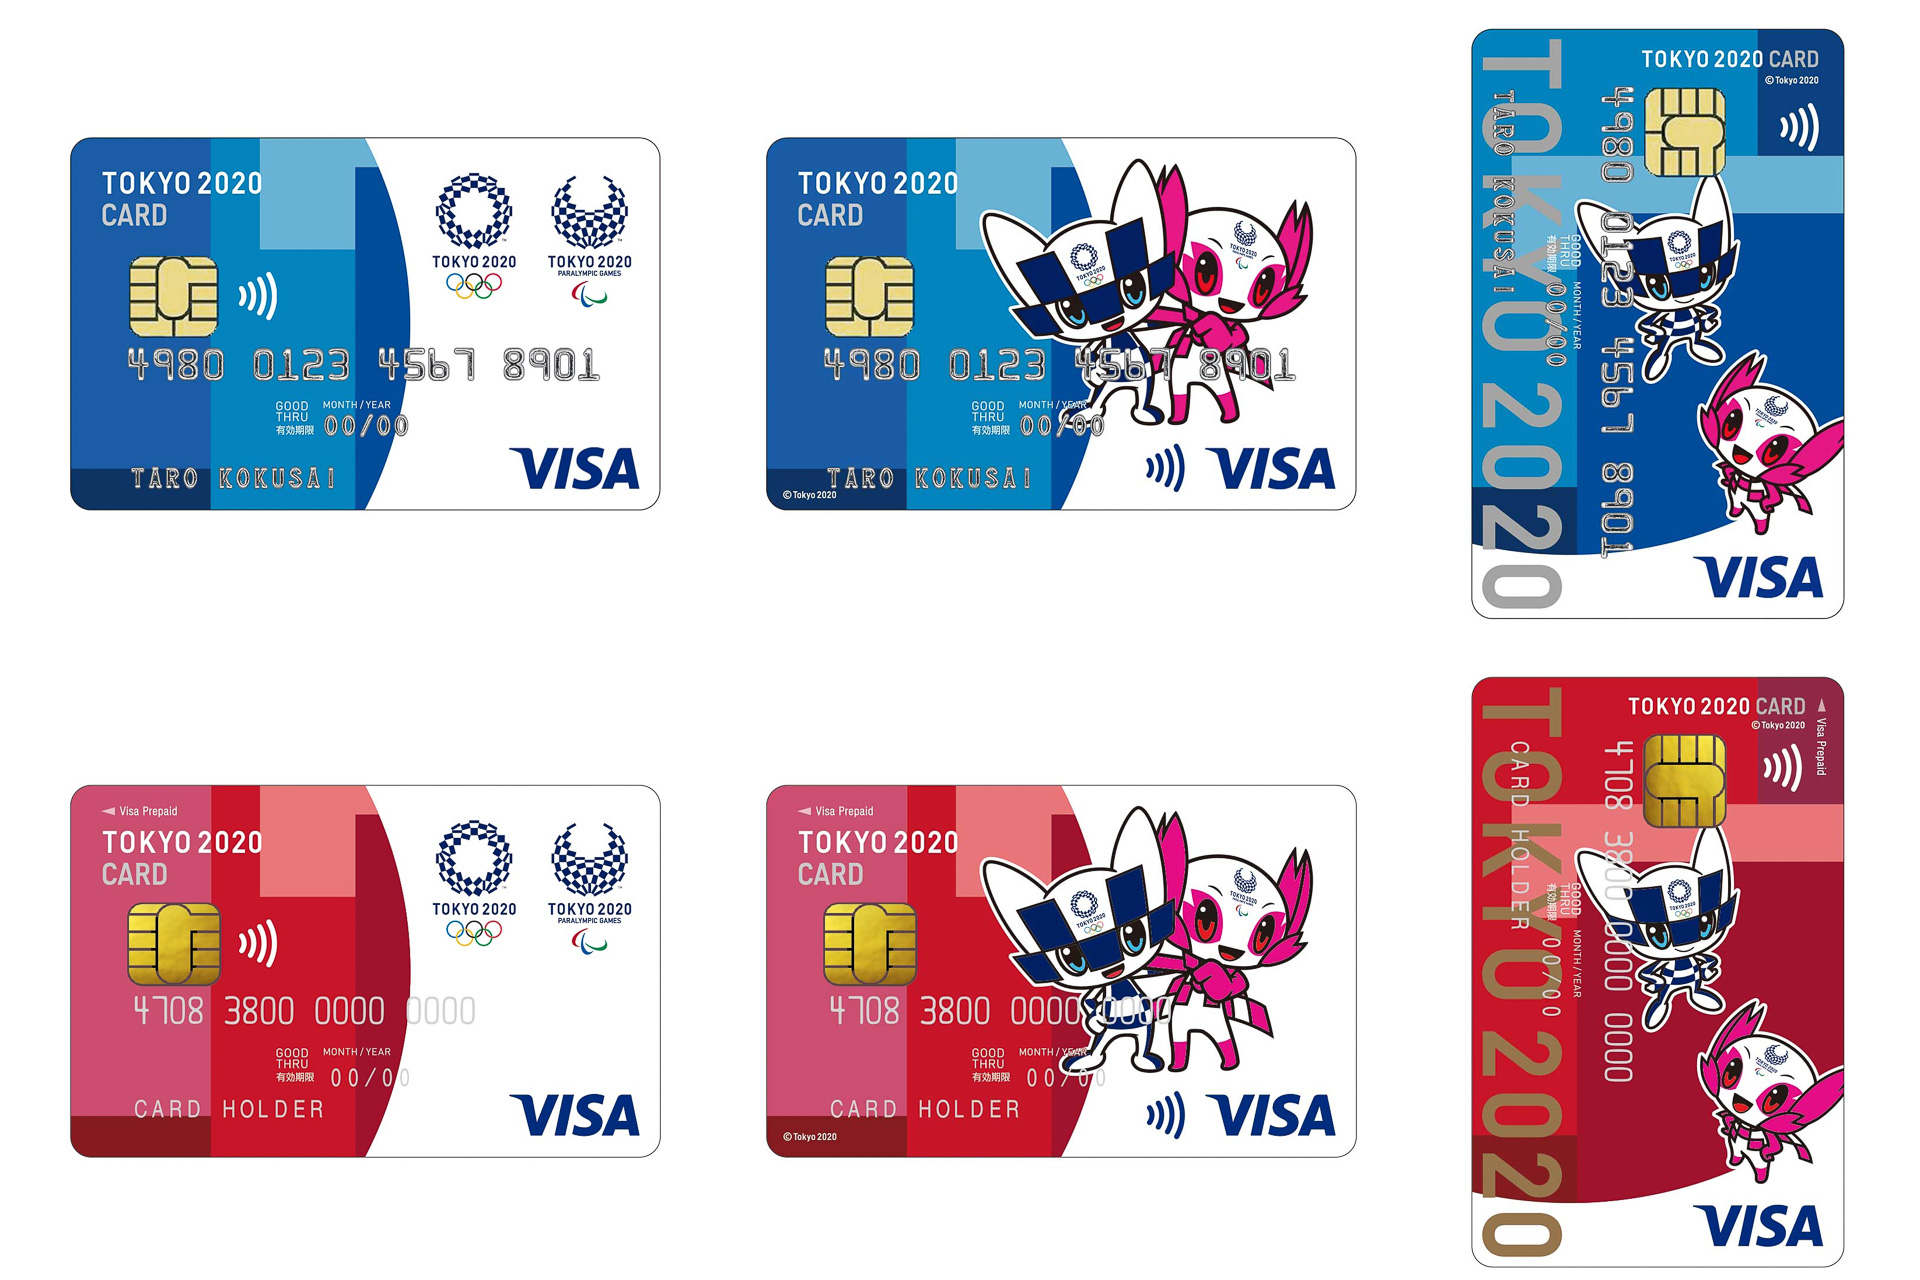 東京2020大会公式Visaカード「TOKYO 2020 CARD」に新デザイン。クレジット、プリペイド各3種 トラベル Watch